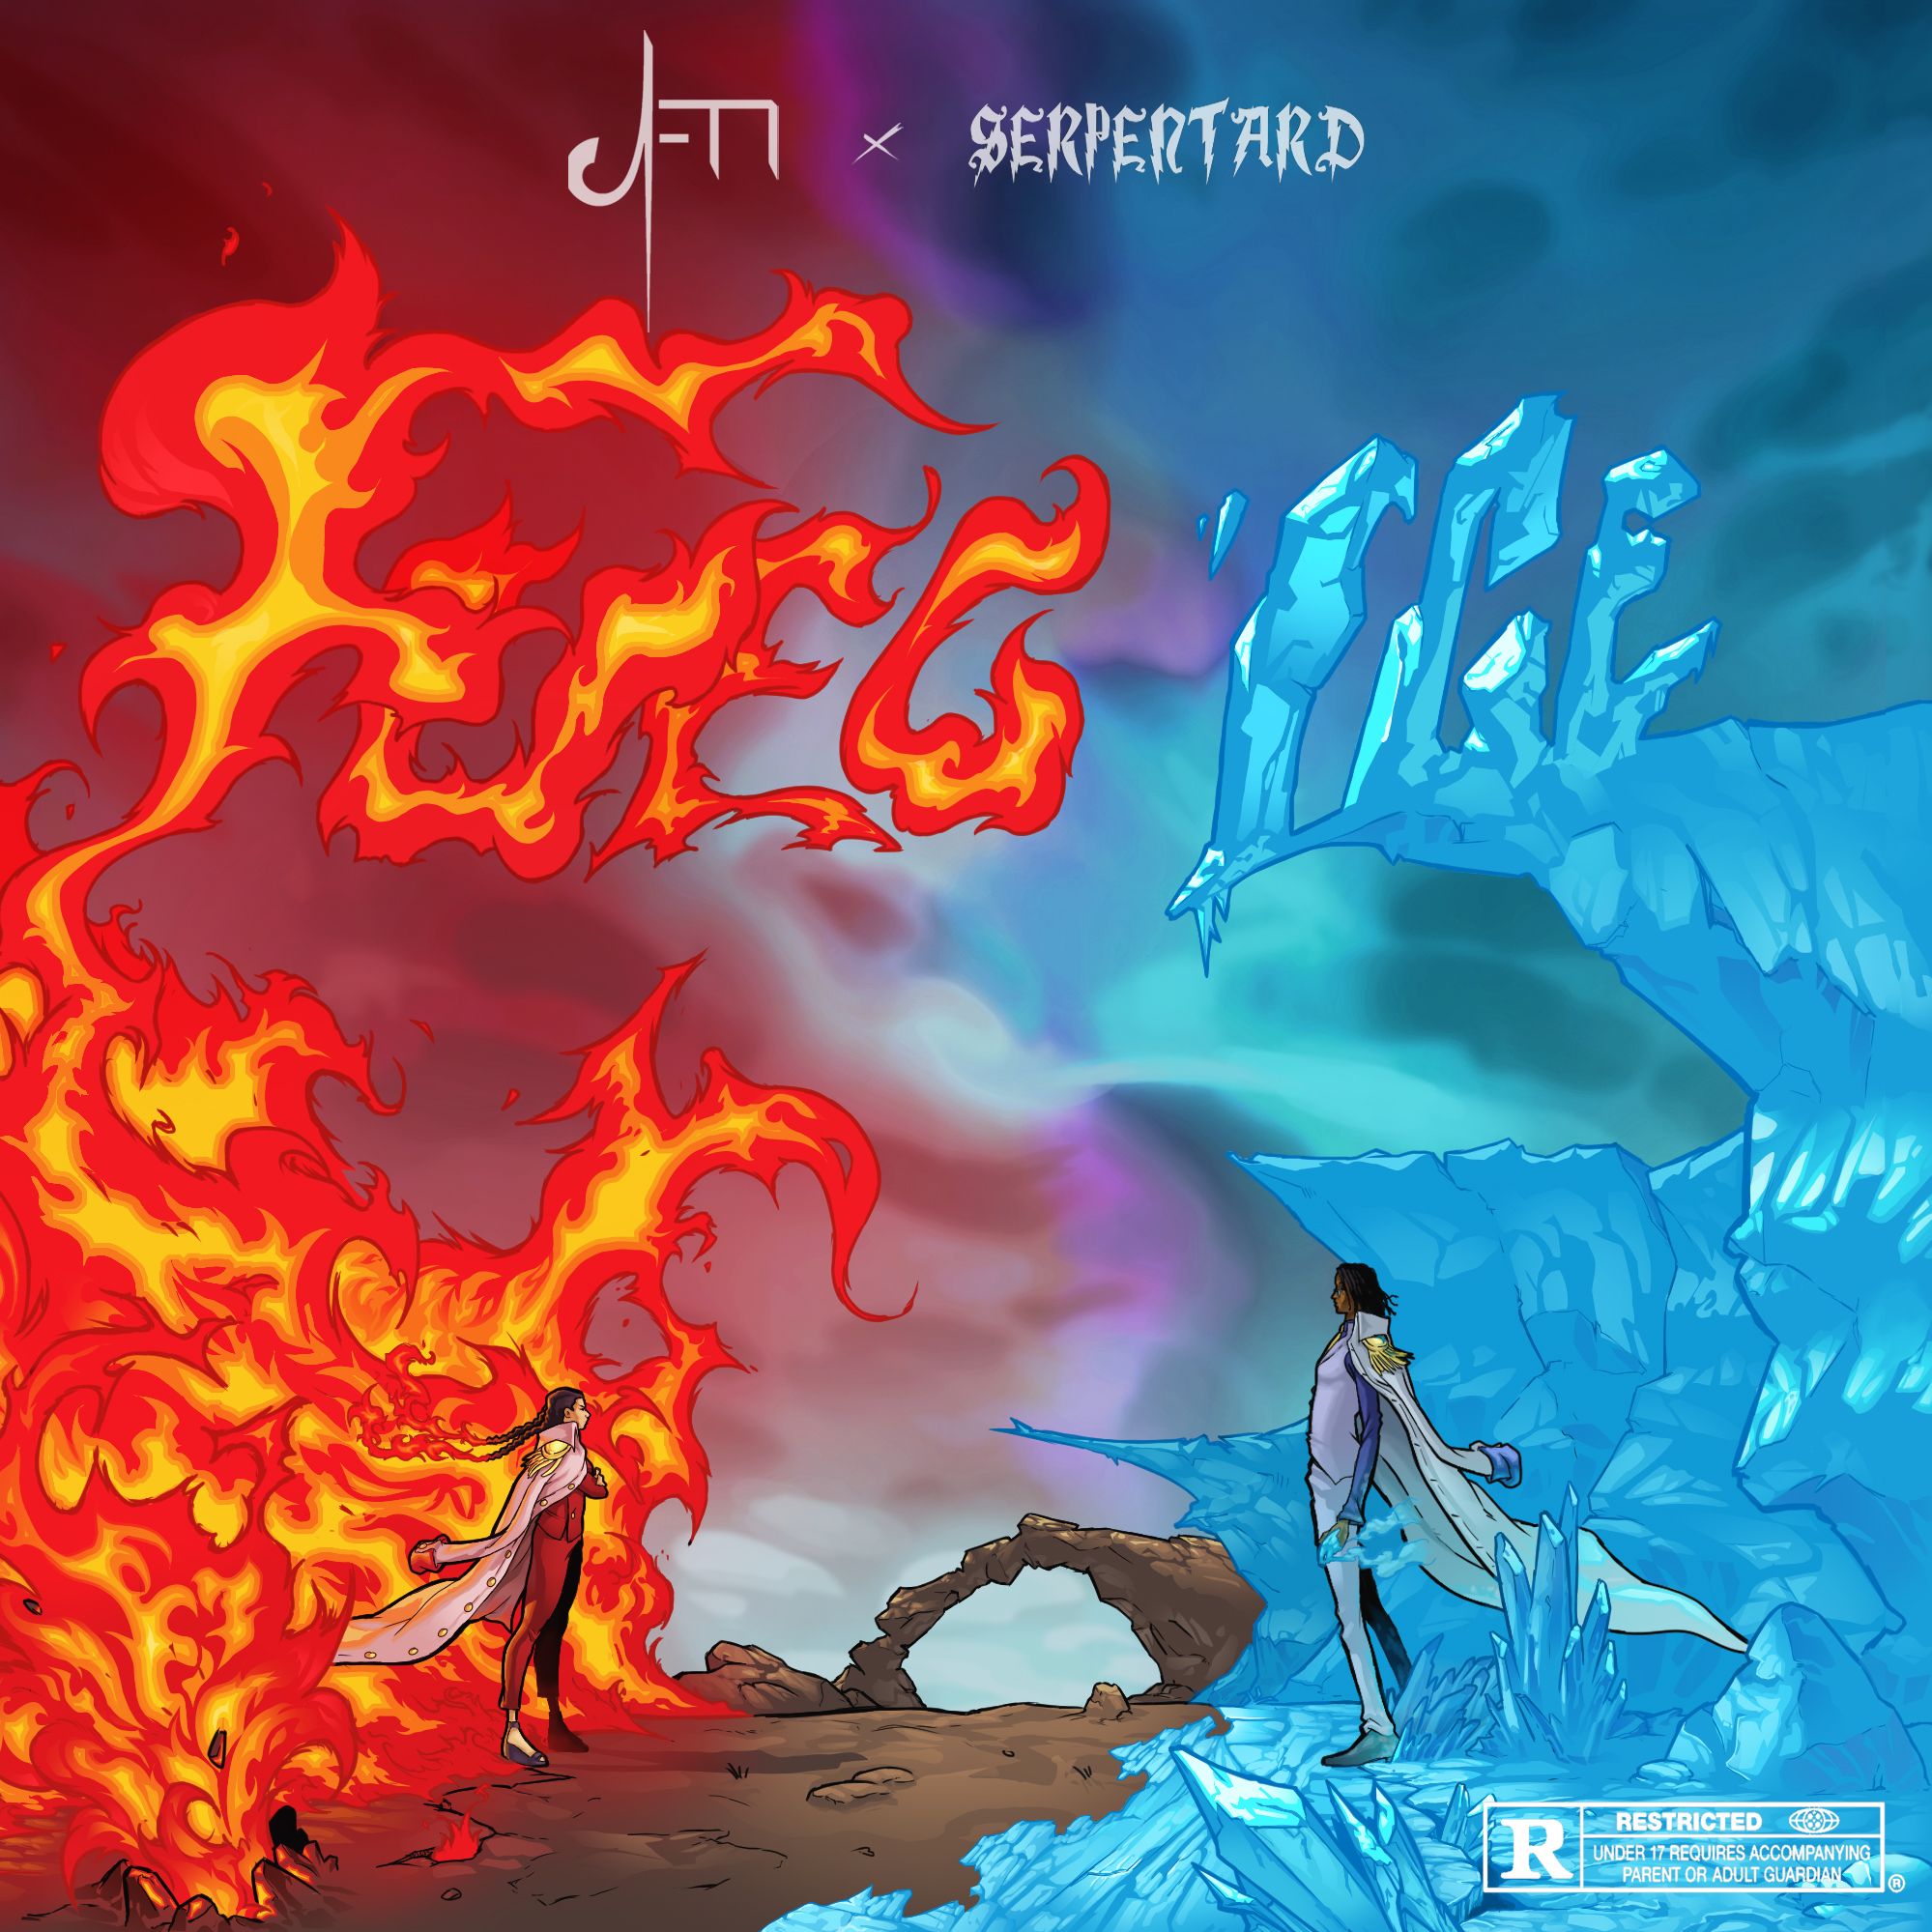 Stiahnuť ▼ Namu Serpentard , Arabic Flavor Music - FUEG'ICE